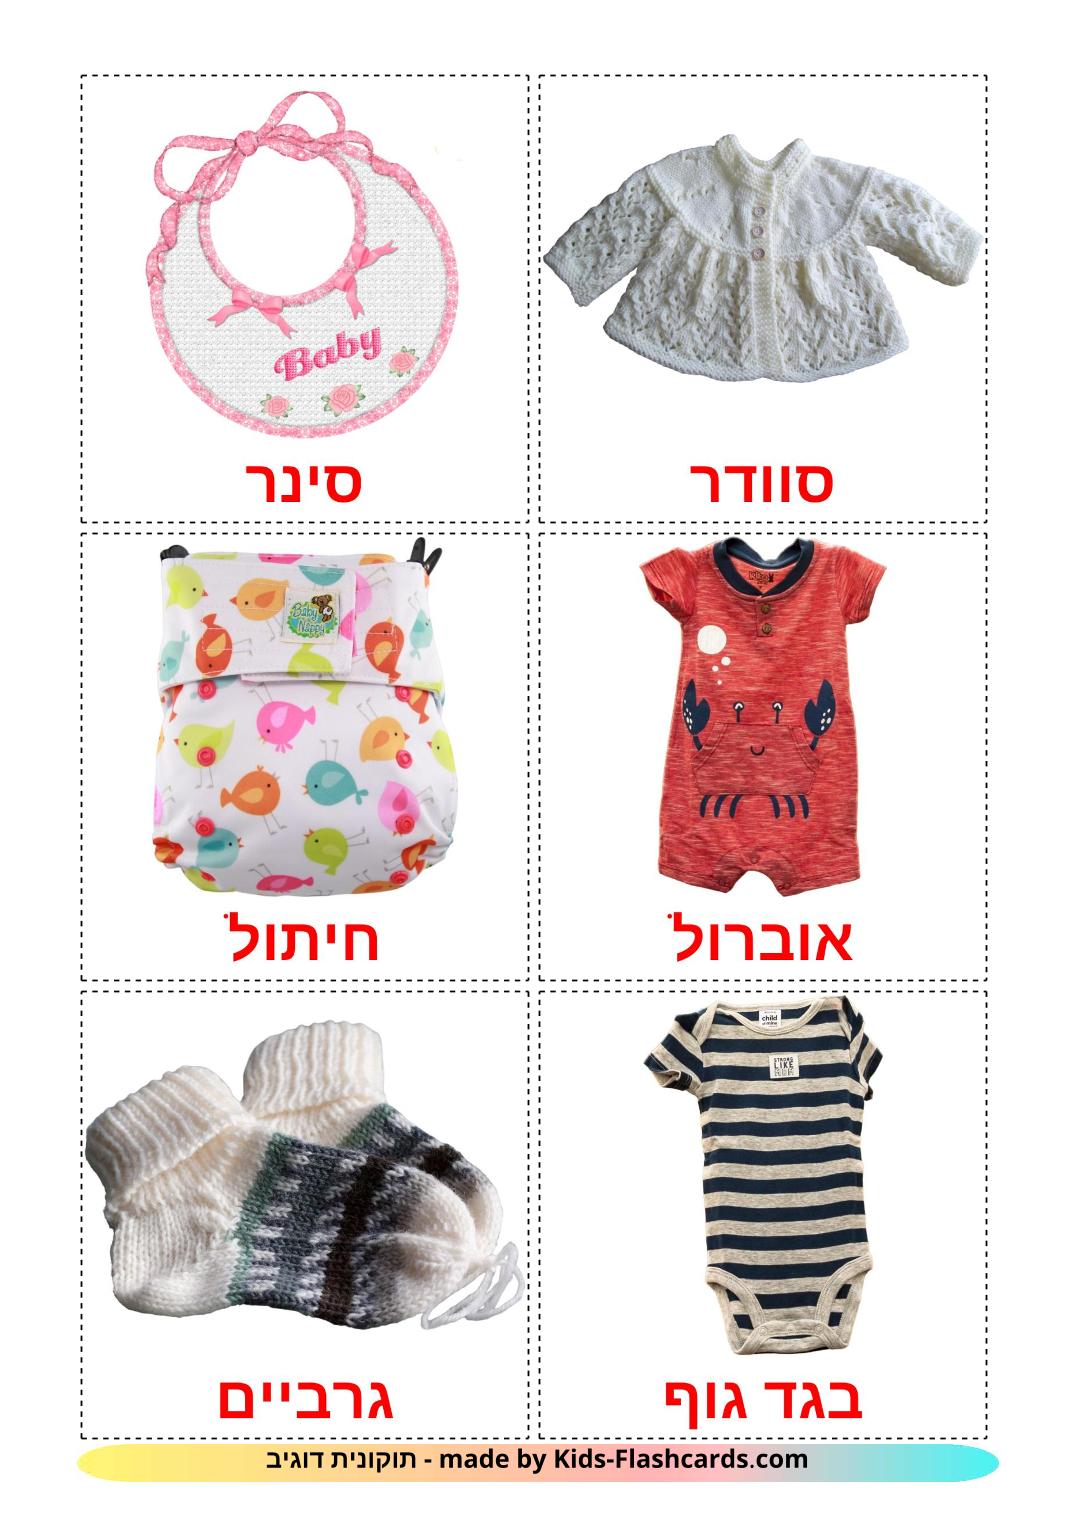 Roupas do Bebê - 11 Flashcards hebraicoes gratuitos para impressão